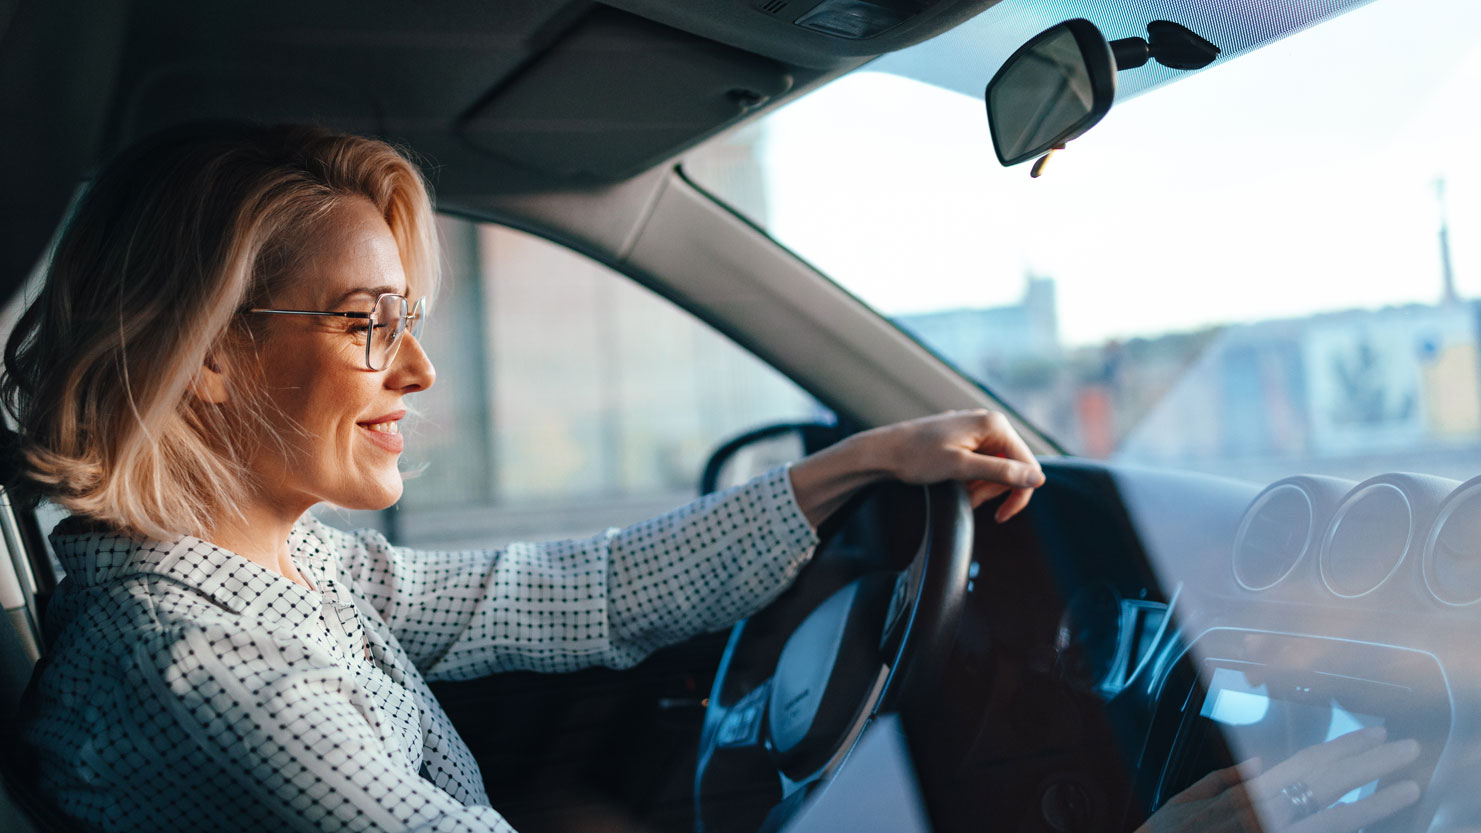 Frau sitzt lächelnd auf dem Fahrersitz eines Autos und hat die linke Hand auf das Lenkrad gelegt. Aufnahme aus der Perspektive des Beifahrers. 